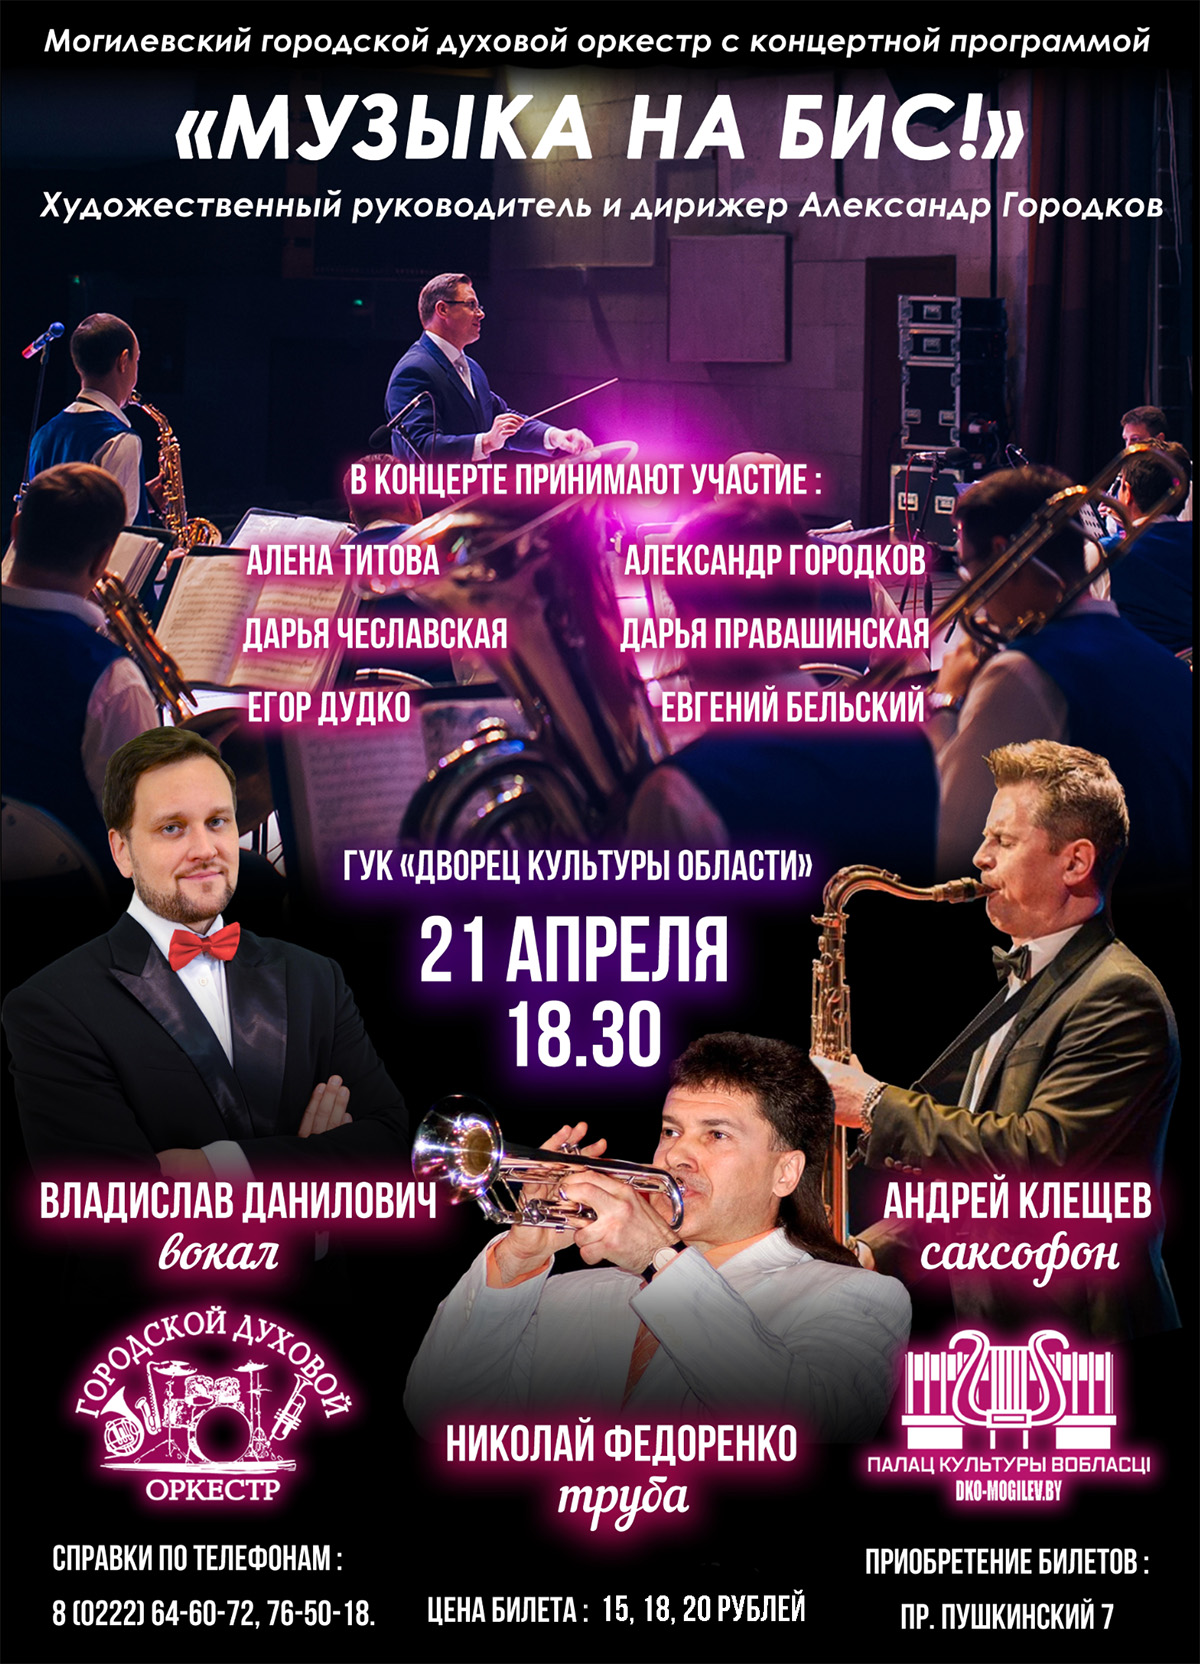 21 апреля в Могилеве пройдет концерт городского духового оркестра «Музыка на бис!»